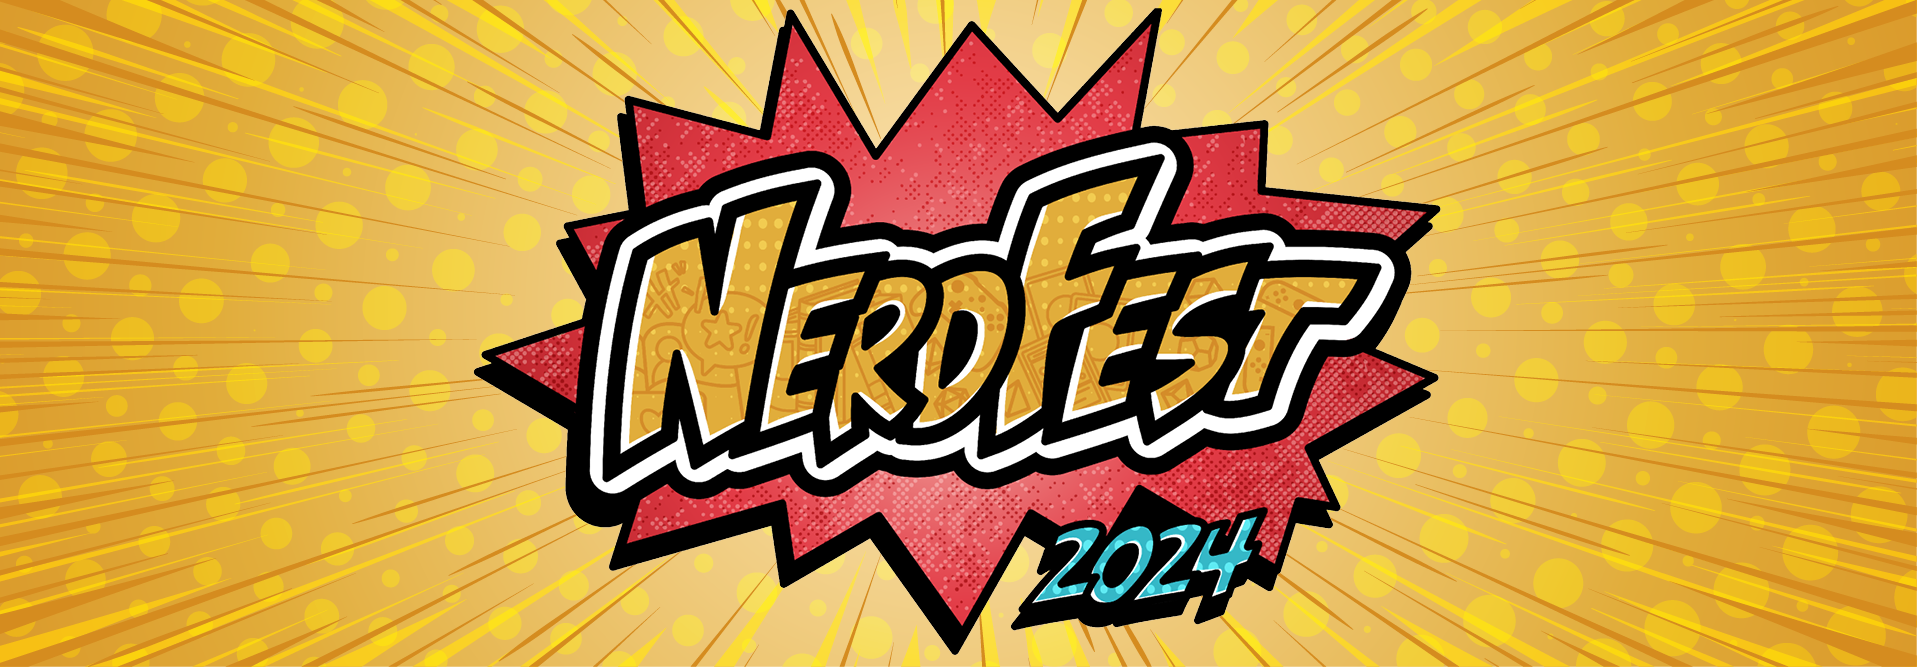 NerdFest header